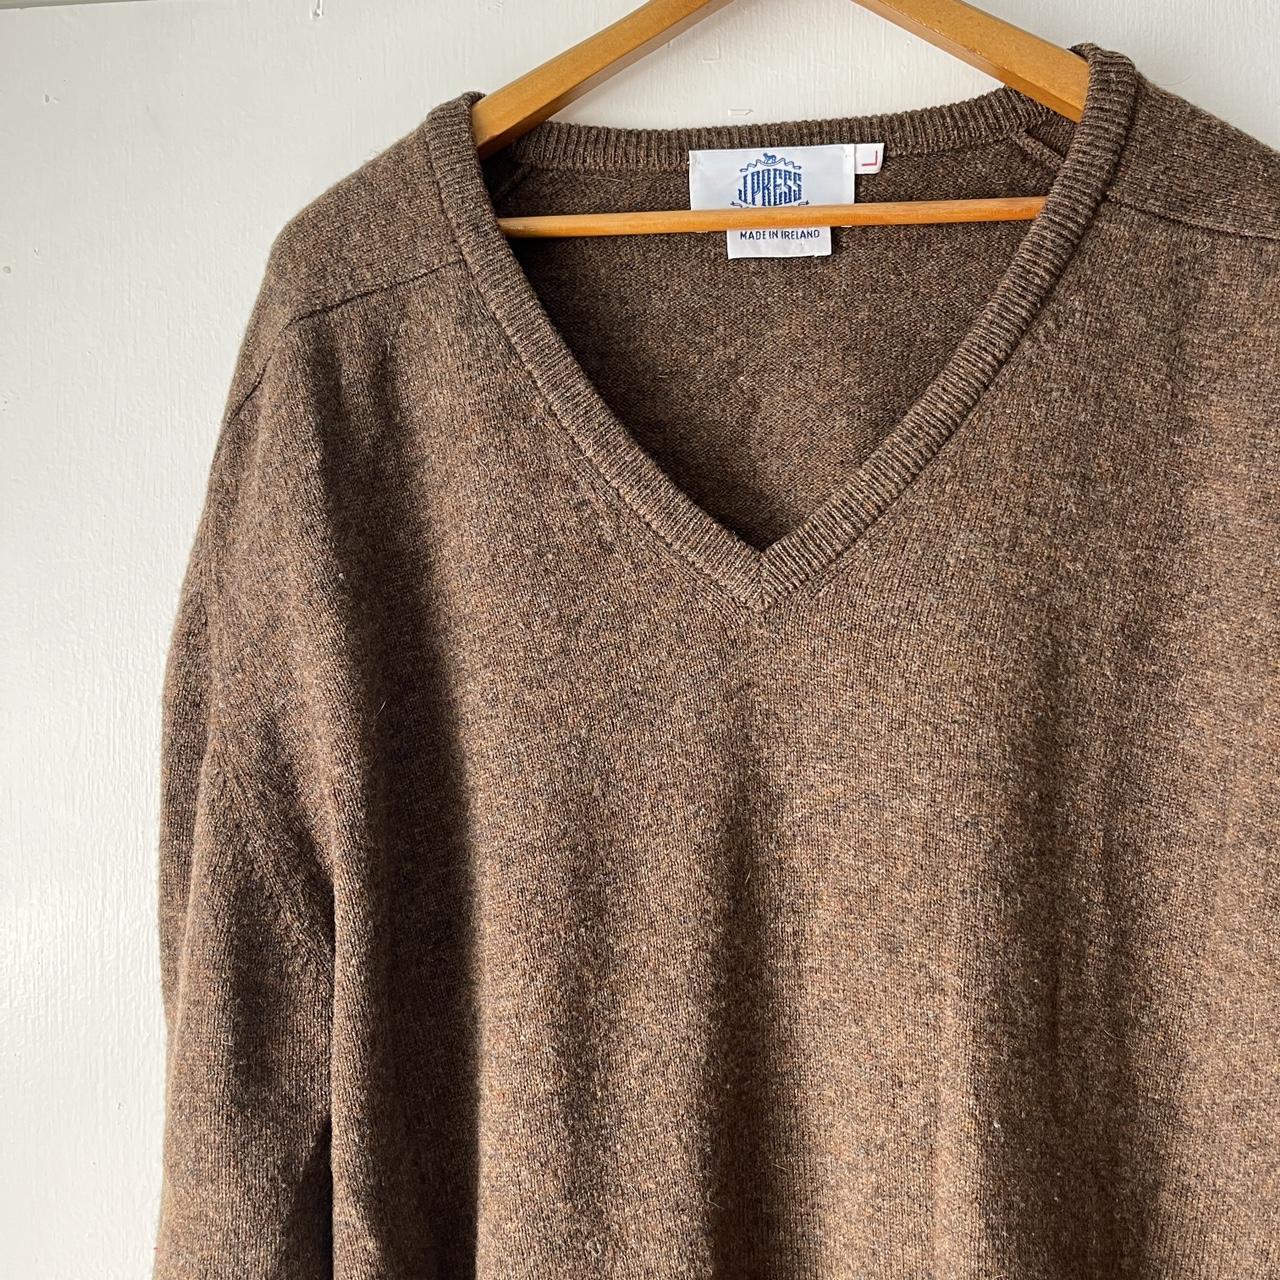 Vintage 1970’s Irish knit brown men’s sweater V neck... - Depop